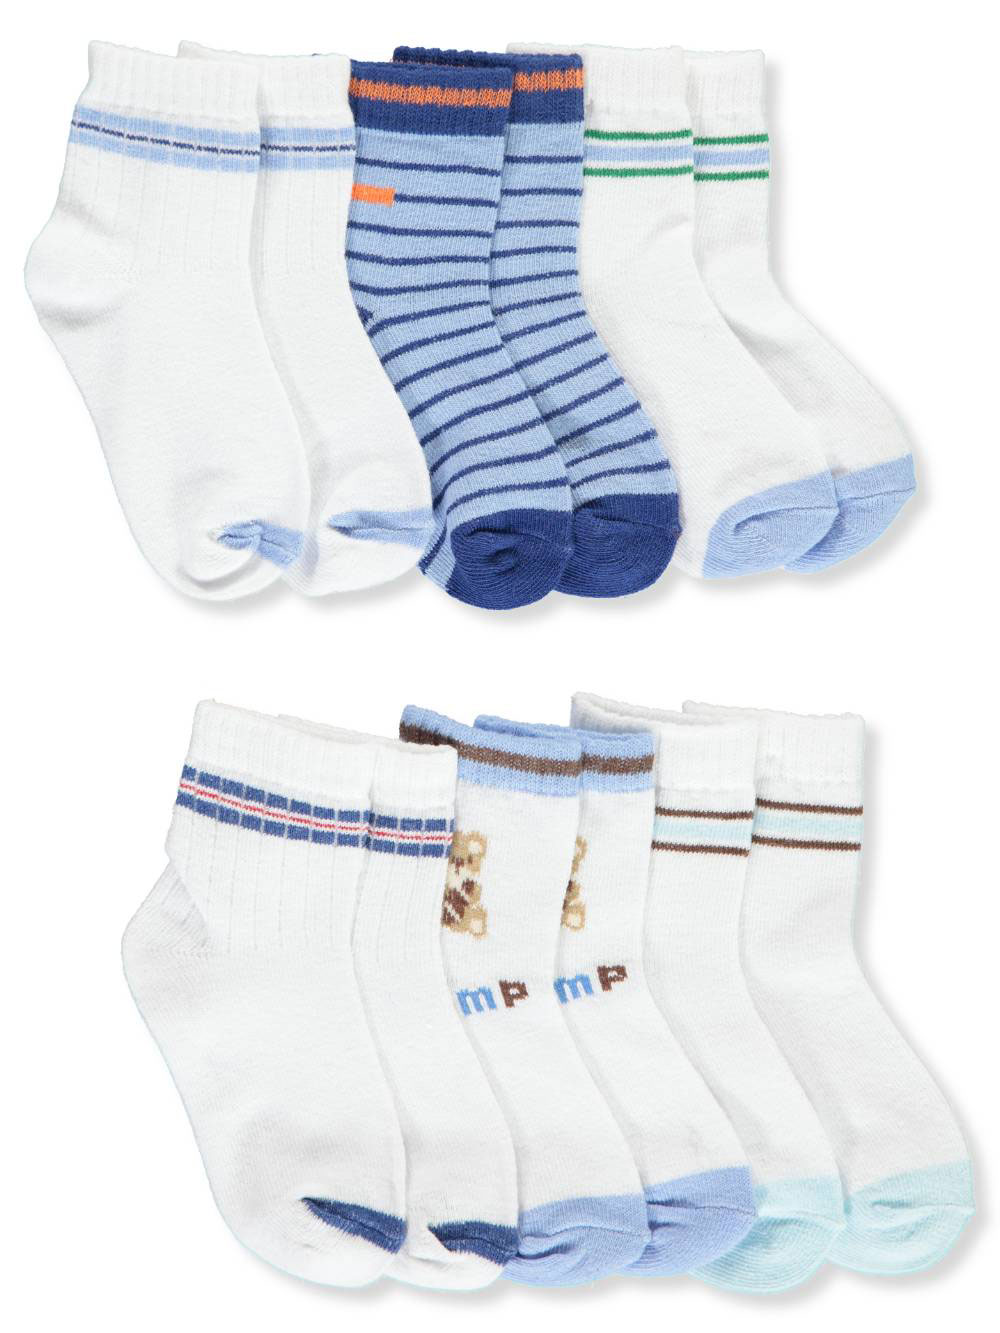 Boys Blue and White Socks